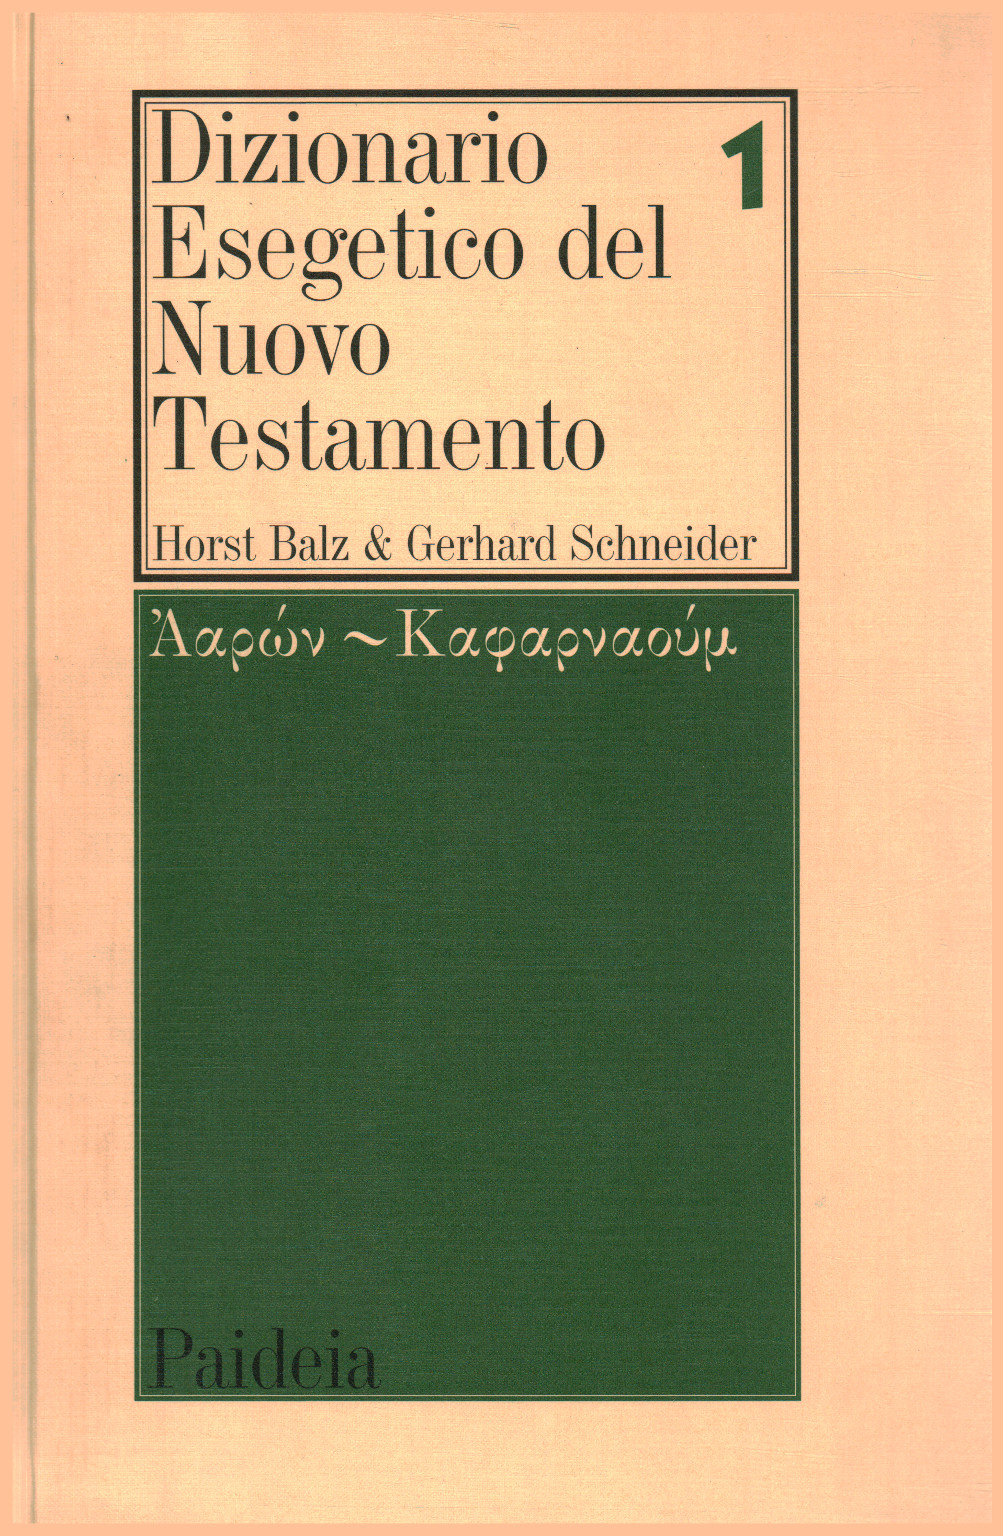 Dictionnaire de l'Exégèse du Nouveau Testament (vol. 1), s.un.